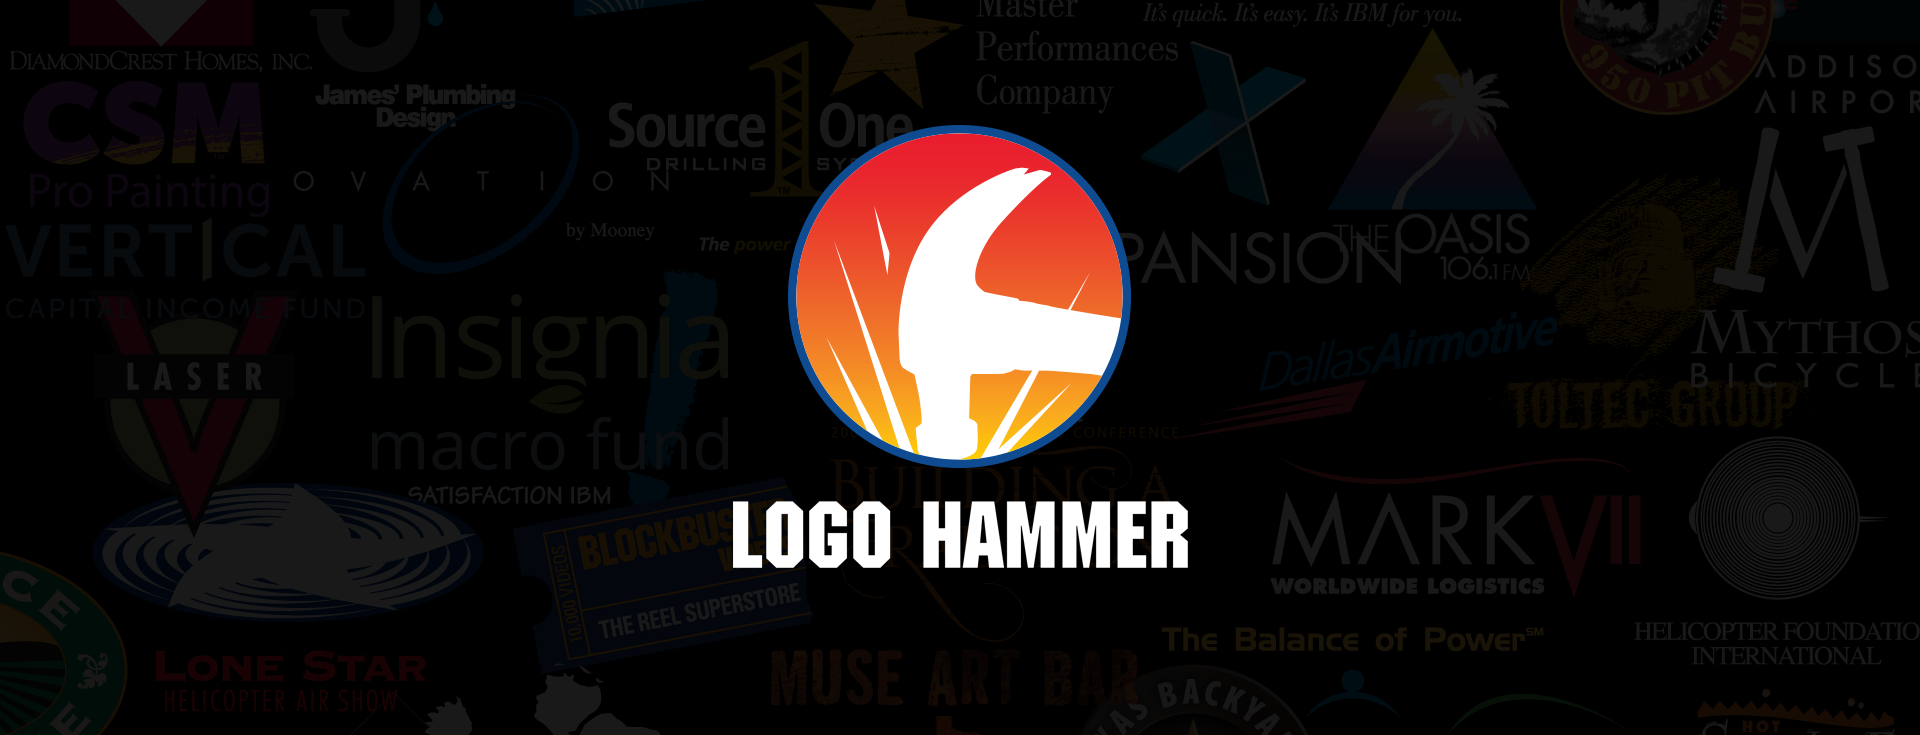 LOGO HAMMER logo